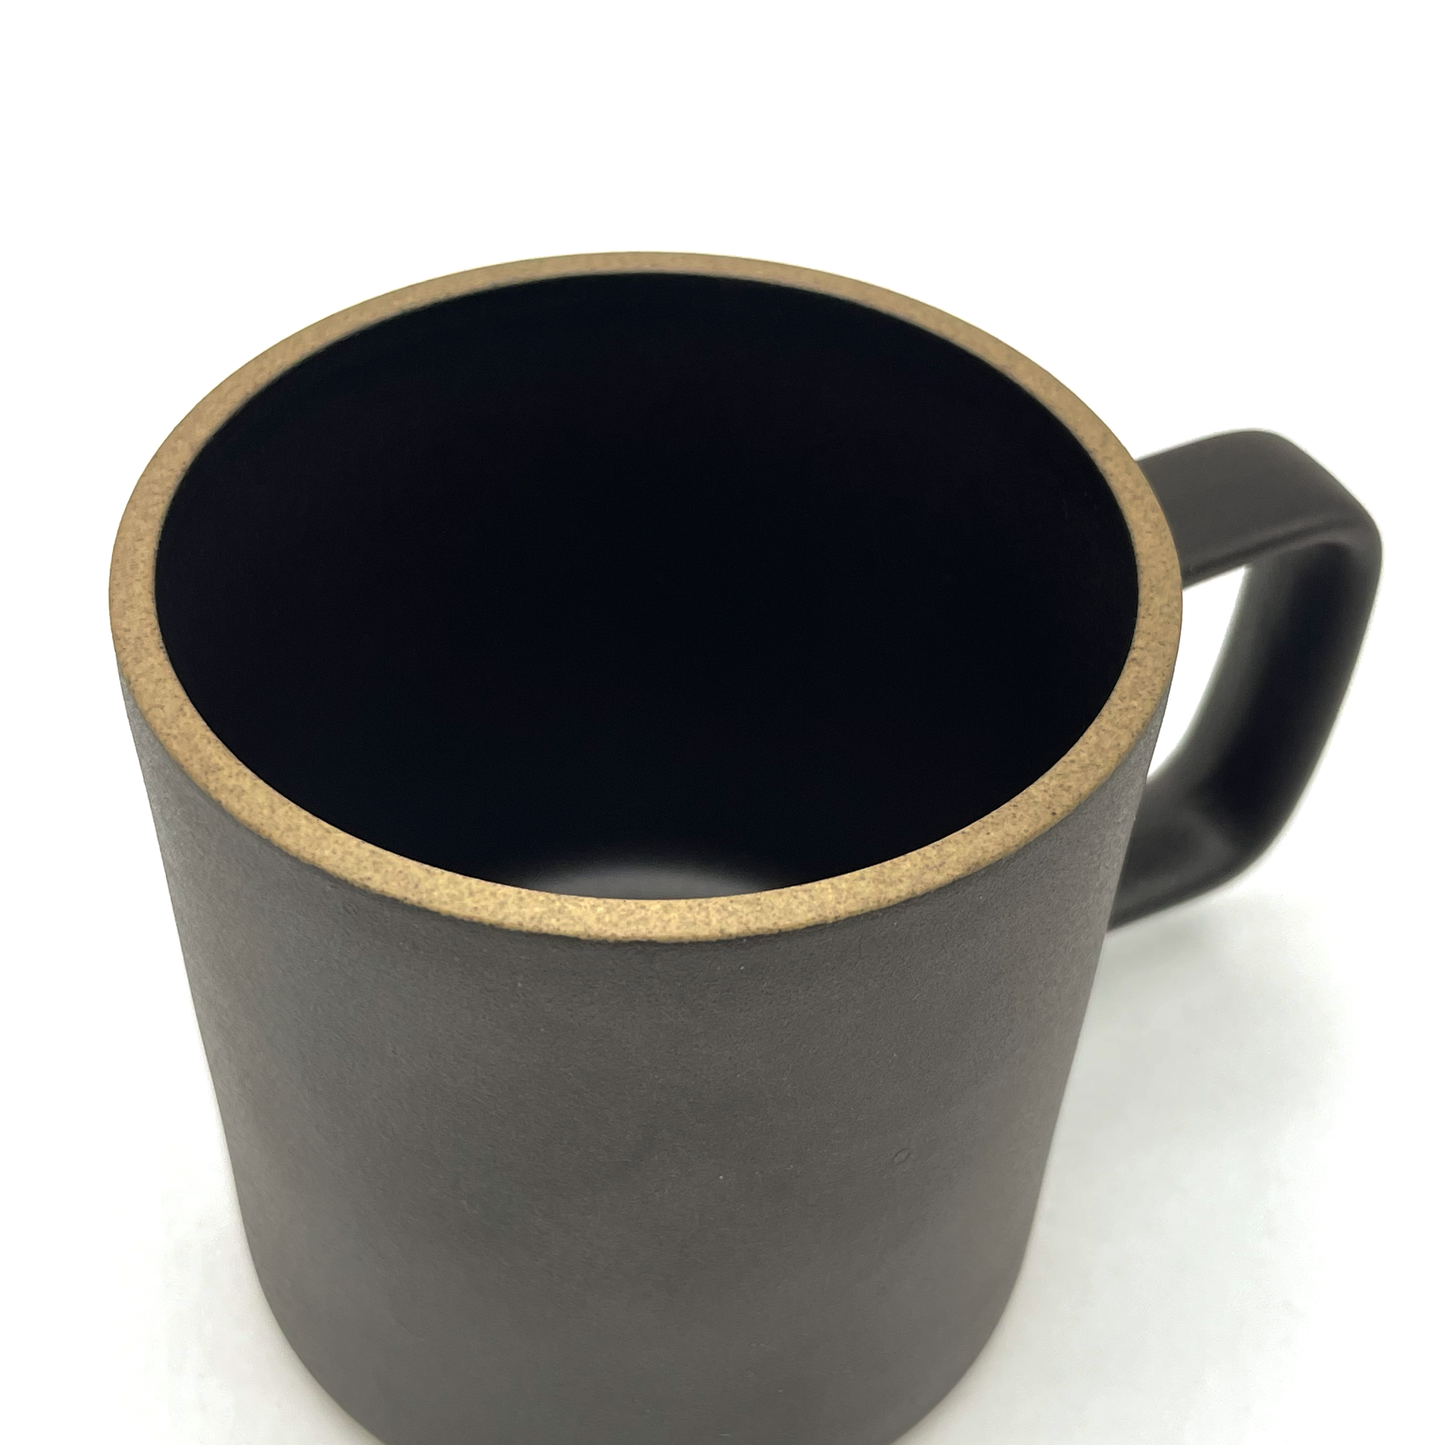 Hasami Porcelain Mug (Black)